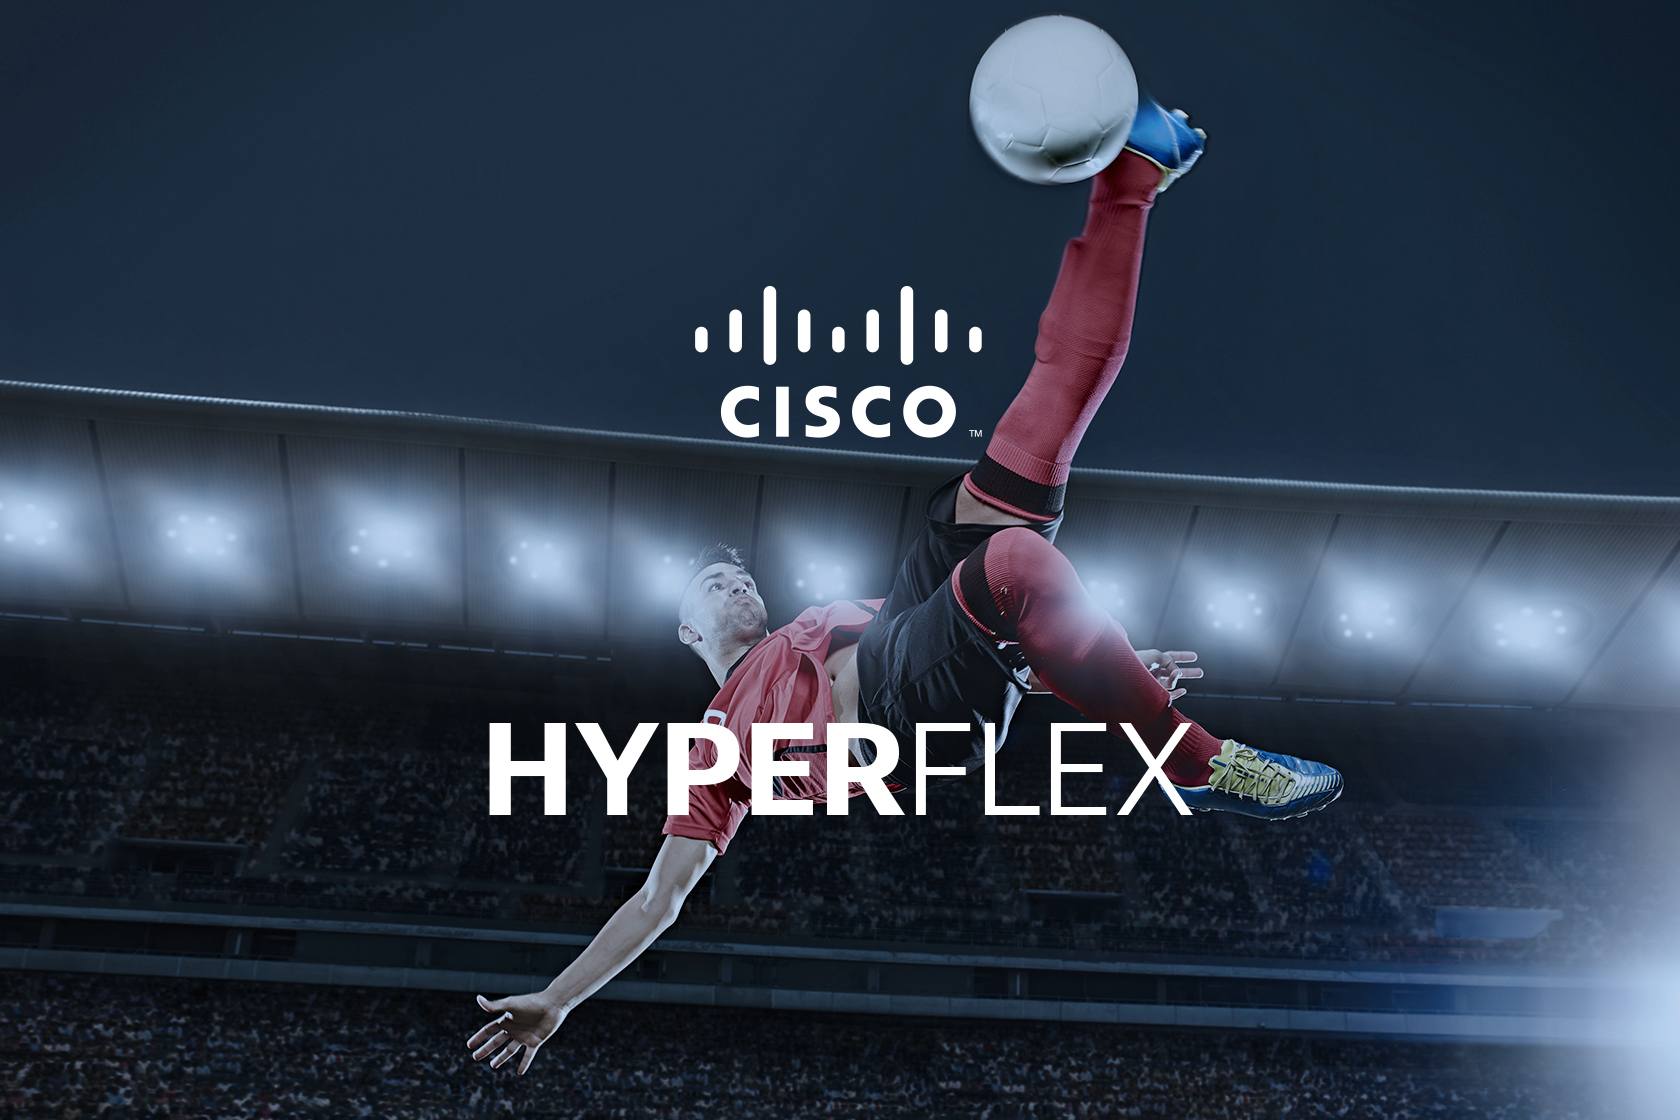 Cisco HyperFlex